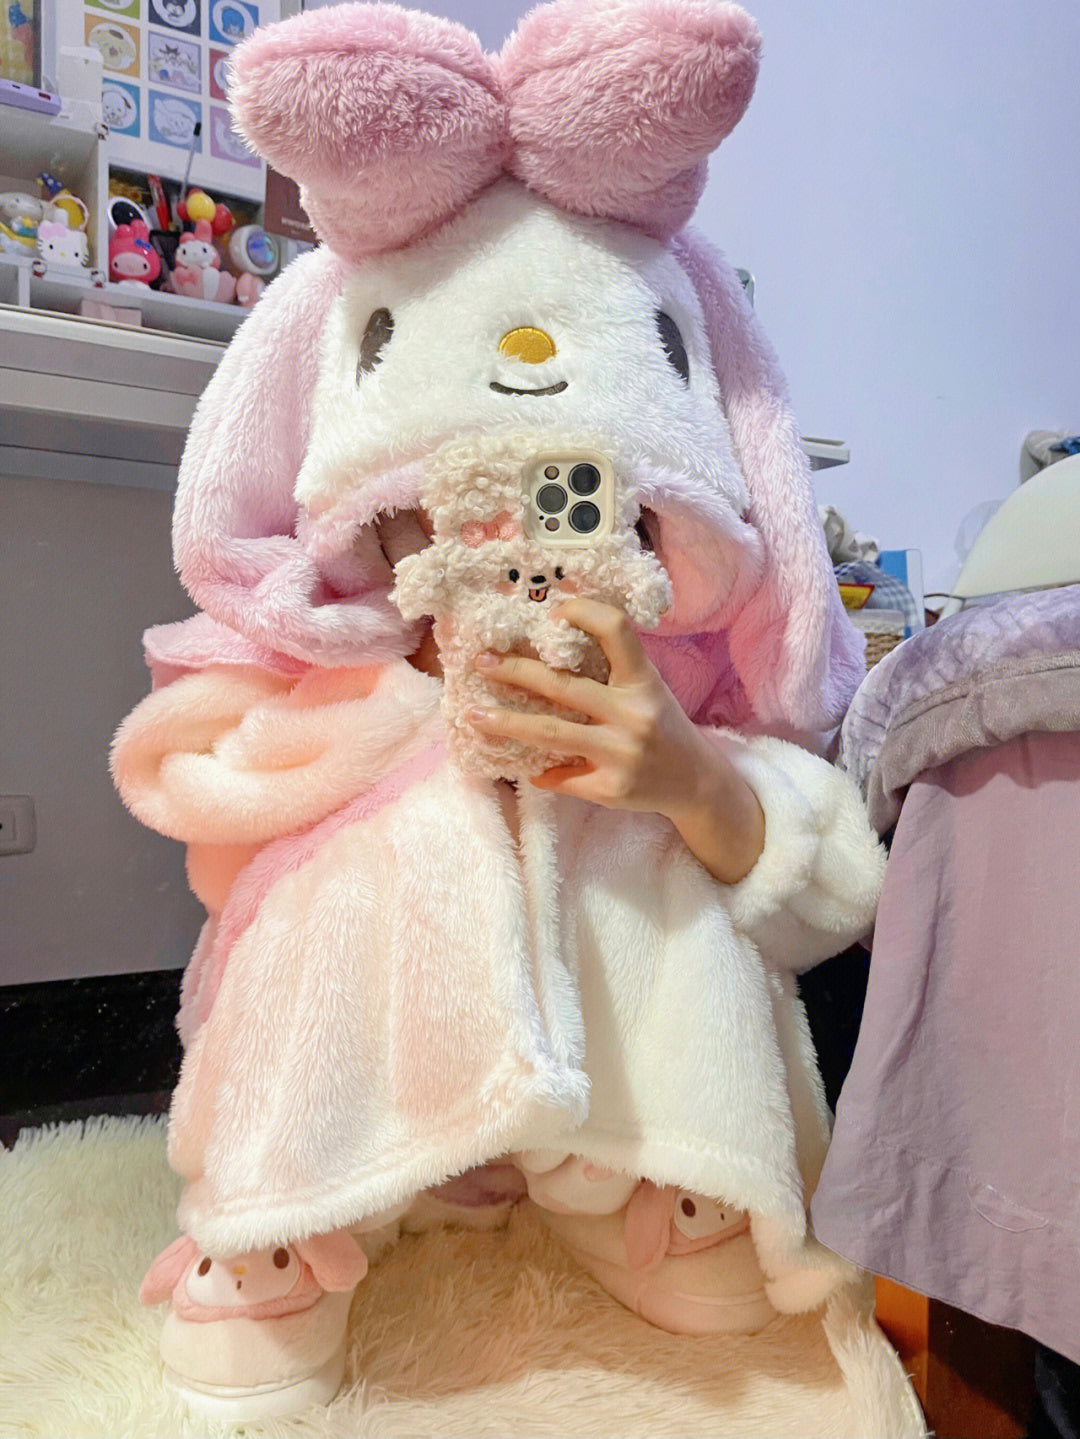 Carton bunny plush pajams S196